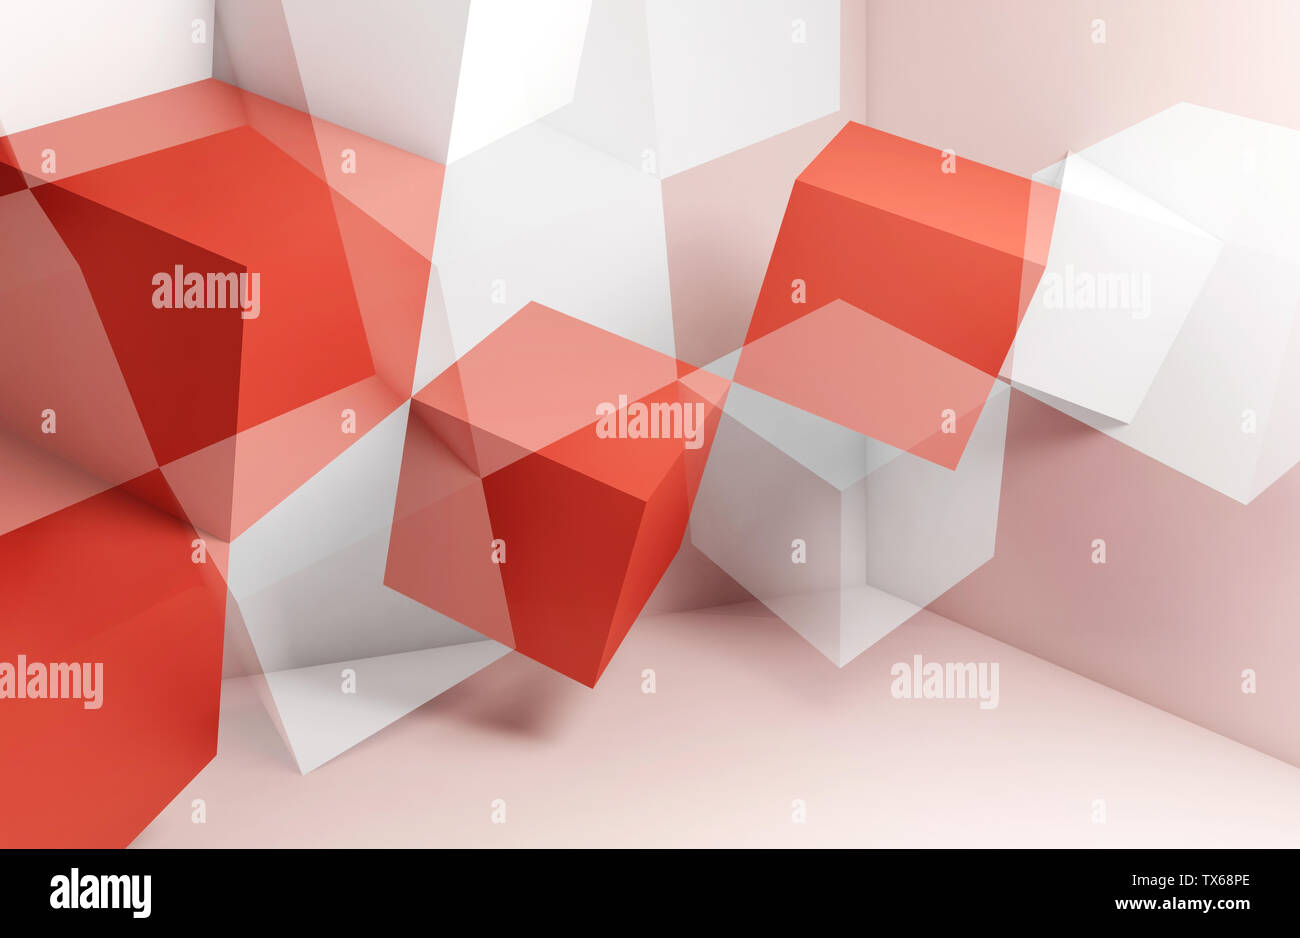 Abstrakte Digitale grafik hintergrund, geschnitten weiße und rote Würfel Strukturen. 3D Rendering illustration Stockfoto